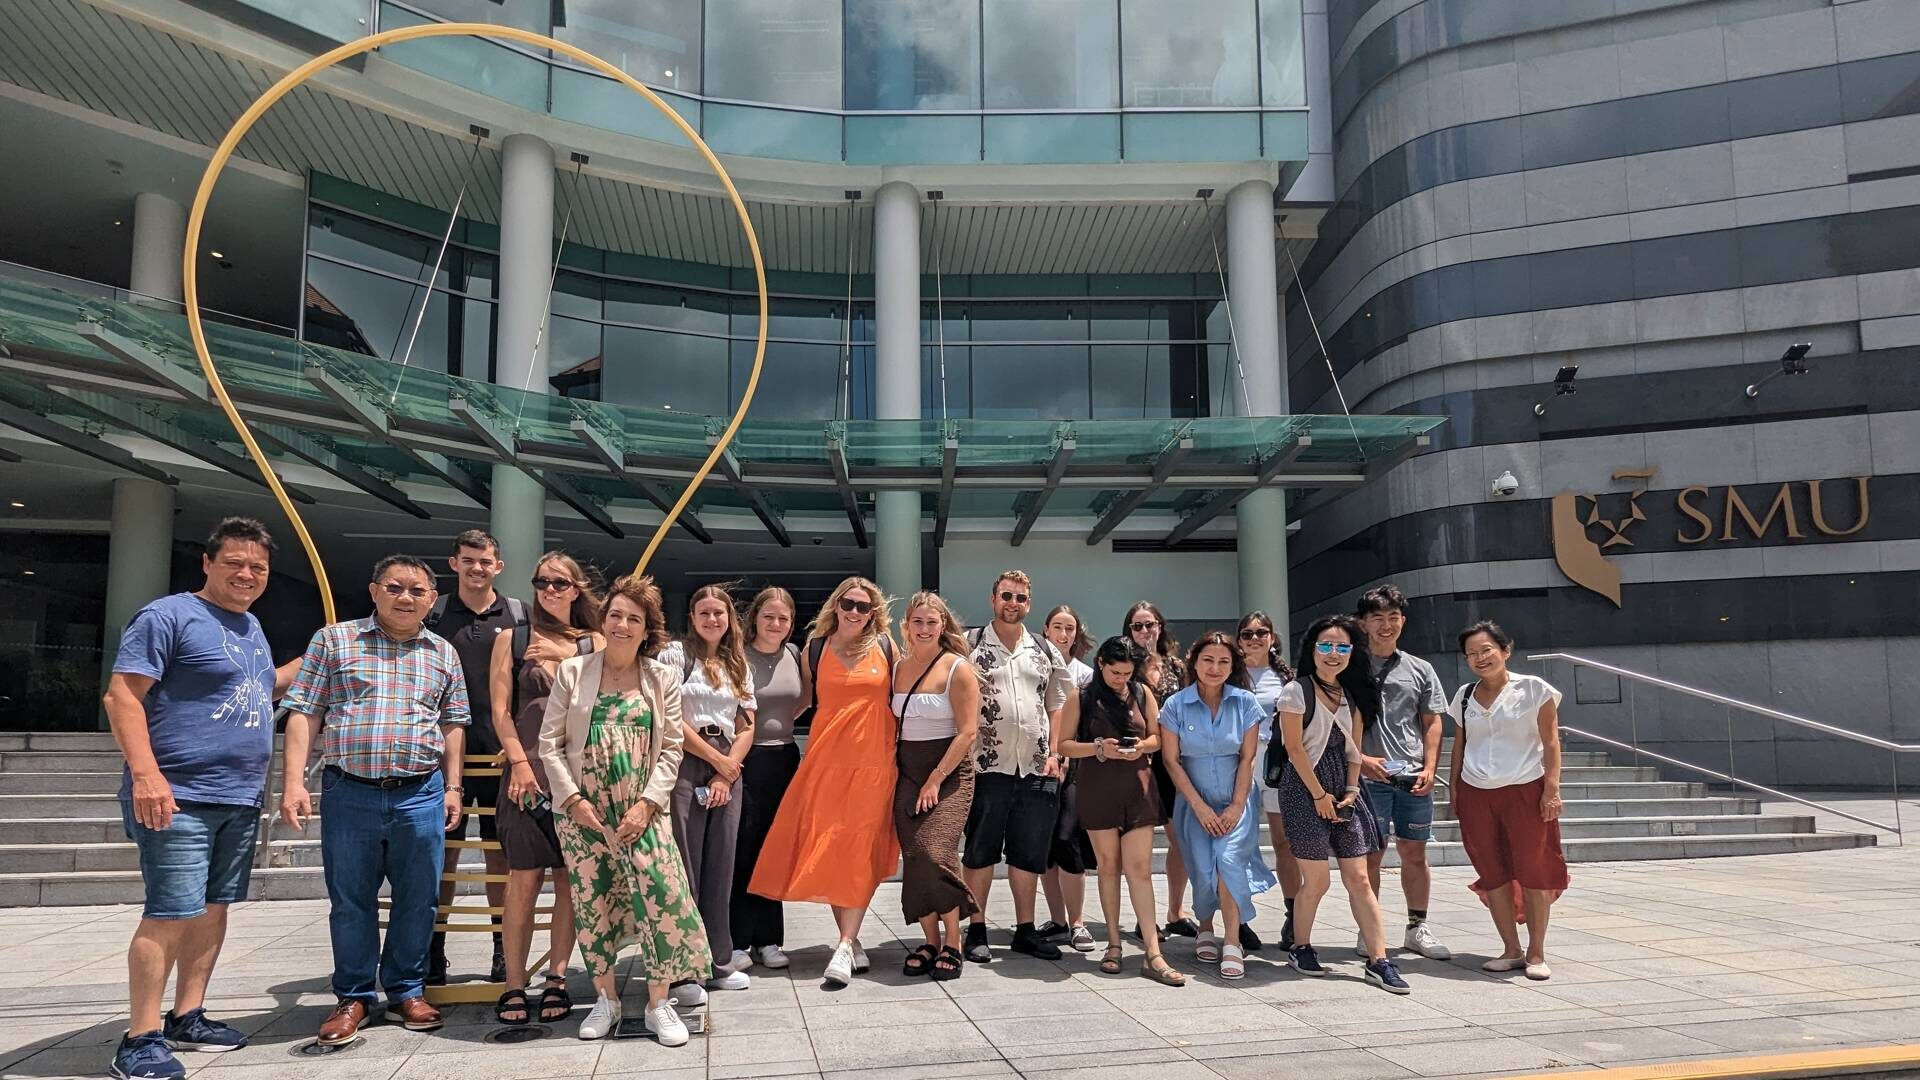 Group photo outside the Singapore Management University.